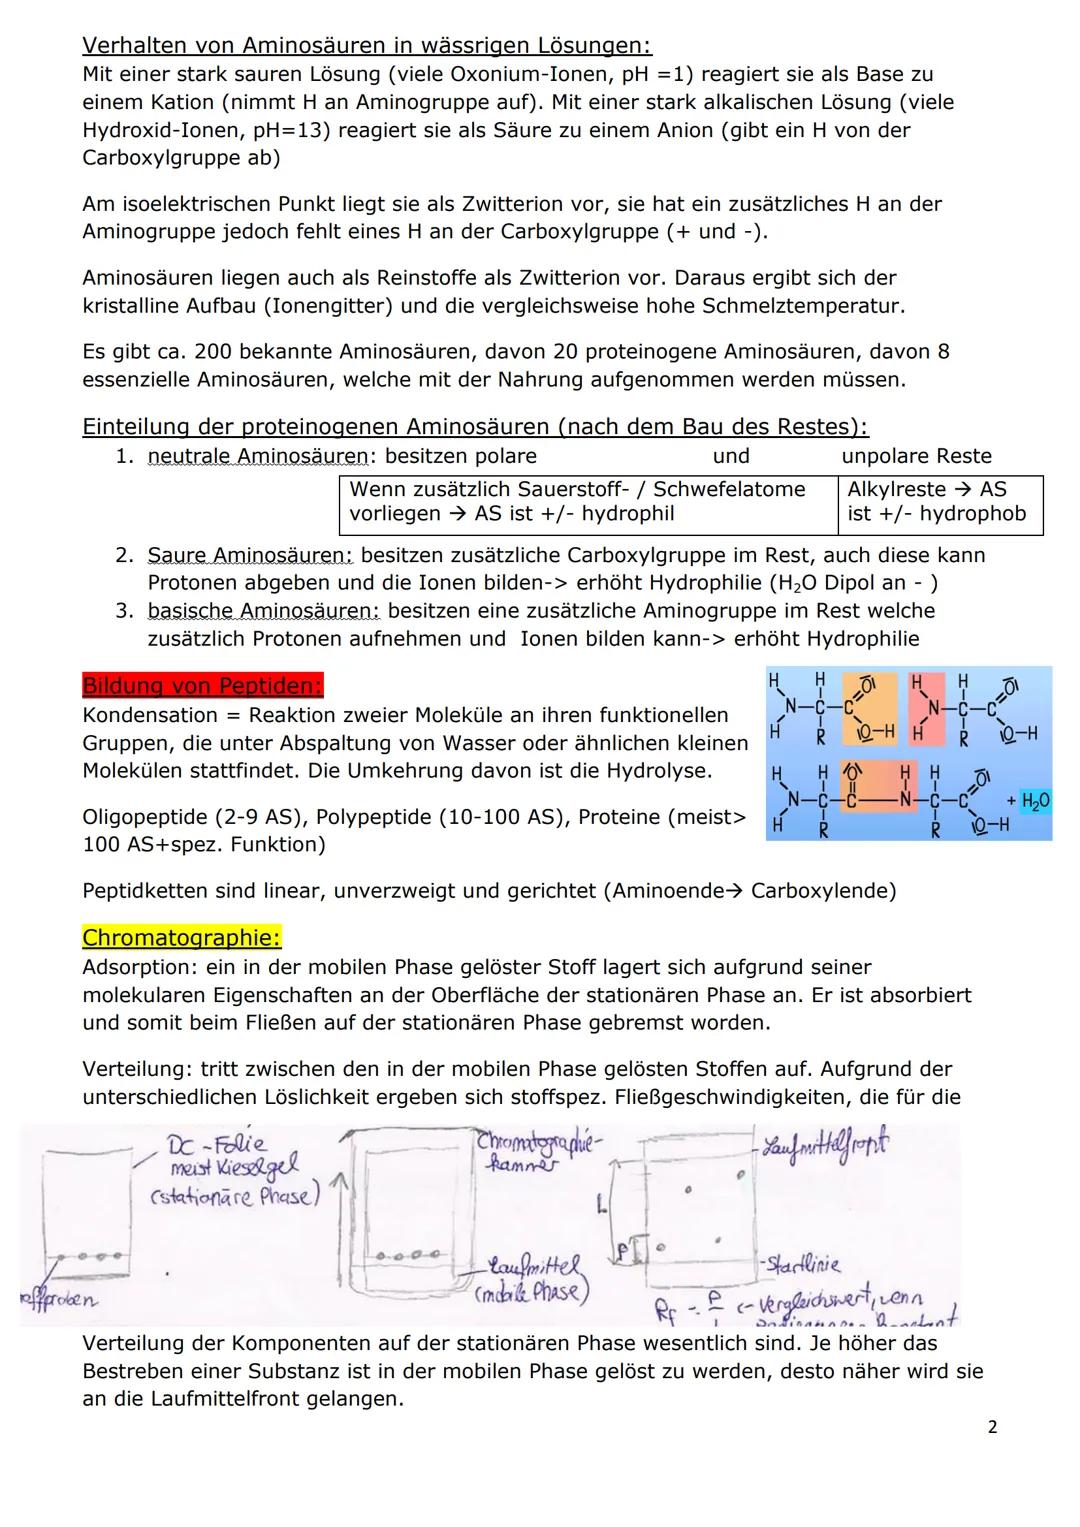 NATURSTOFFE
Stereochemie
Chiral: grundsätzliche Bezeichnung für ein beliebiges Objekt (auch ein Molekül), das nicht
mit seinem Spiegelbild ü